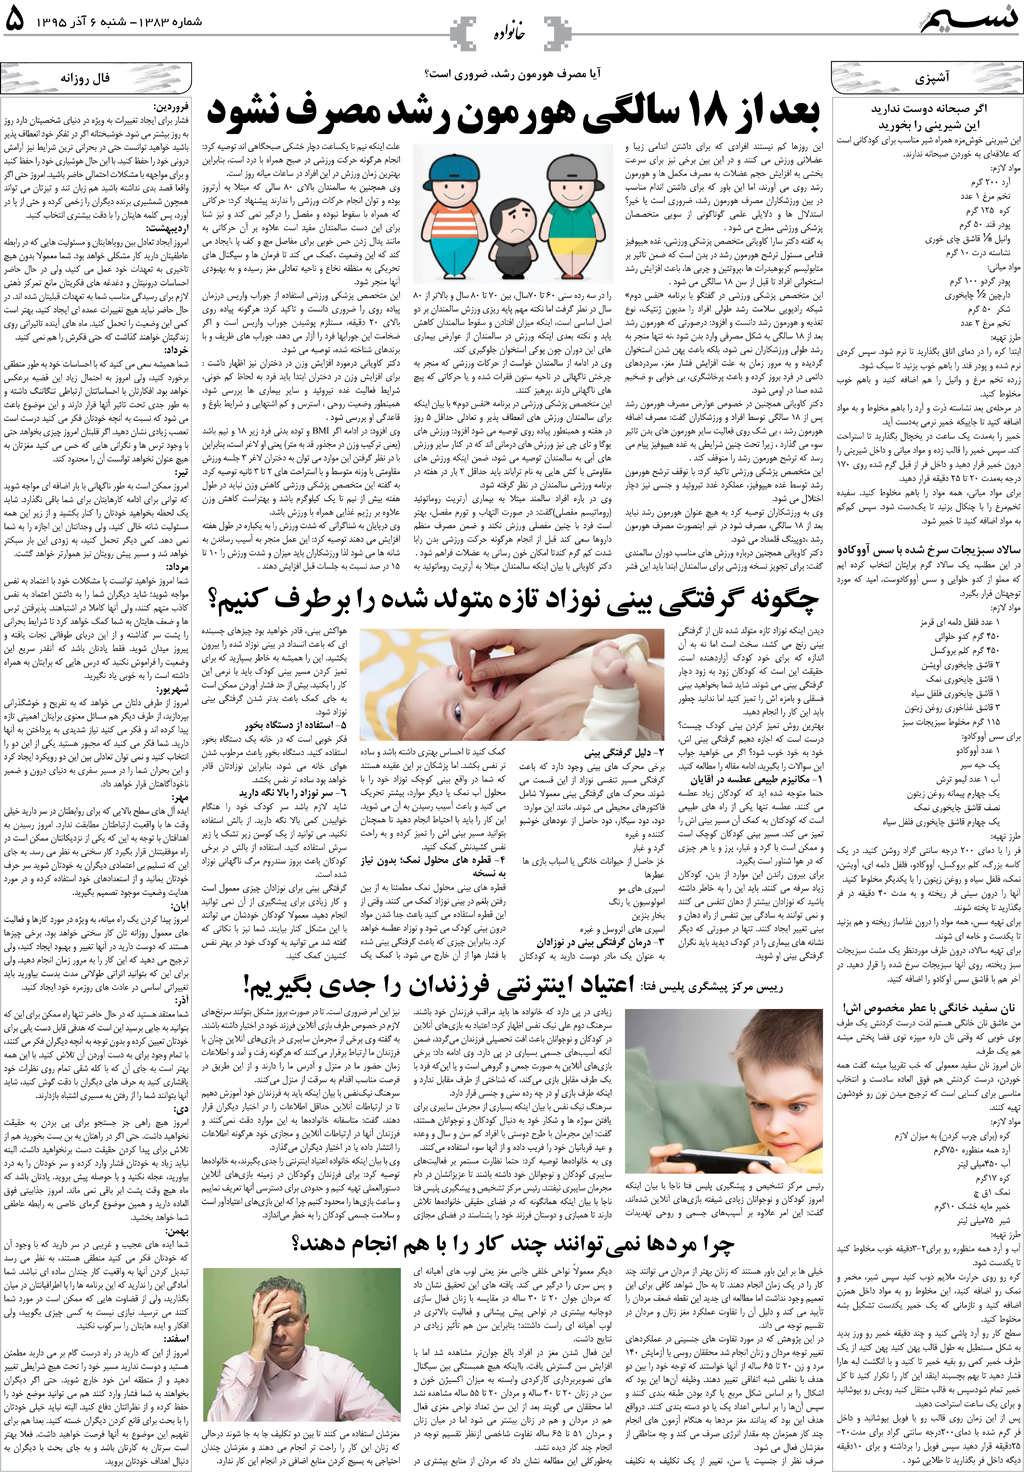 صفحه خانواده روزنامه نسیم شماره 1383